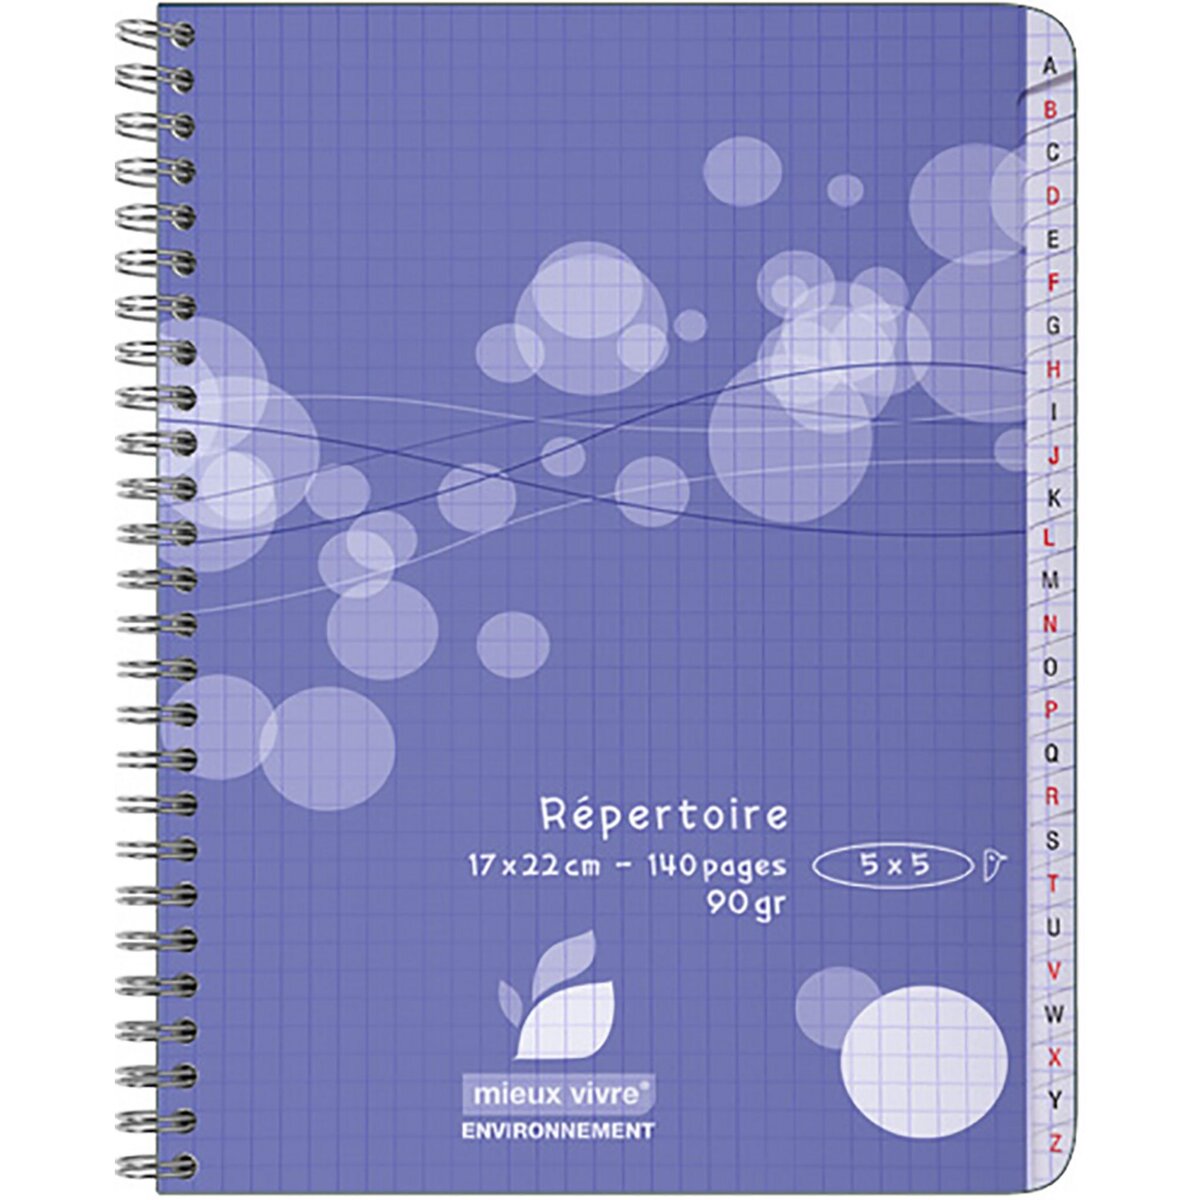 AUCHAN Répertoire à spirale 17x22cm - 140 pages - Petits carreaux 5x5 - violet